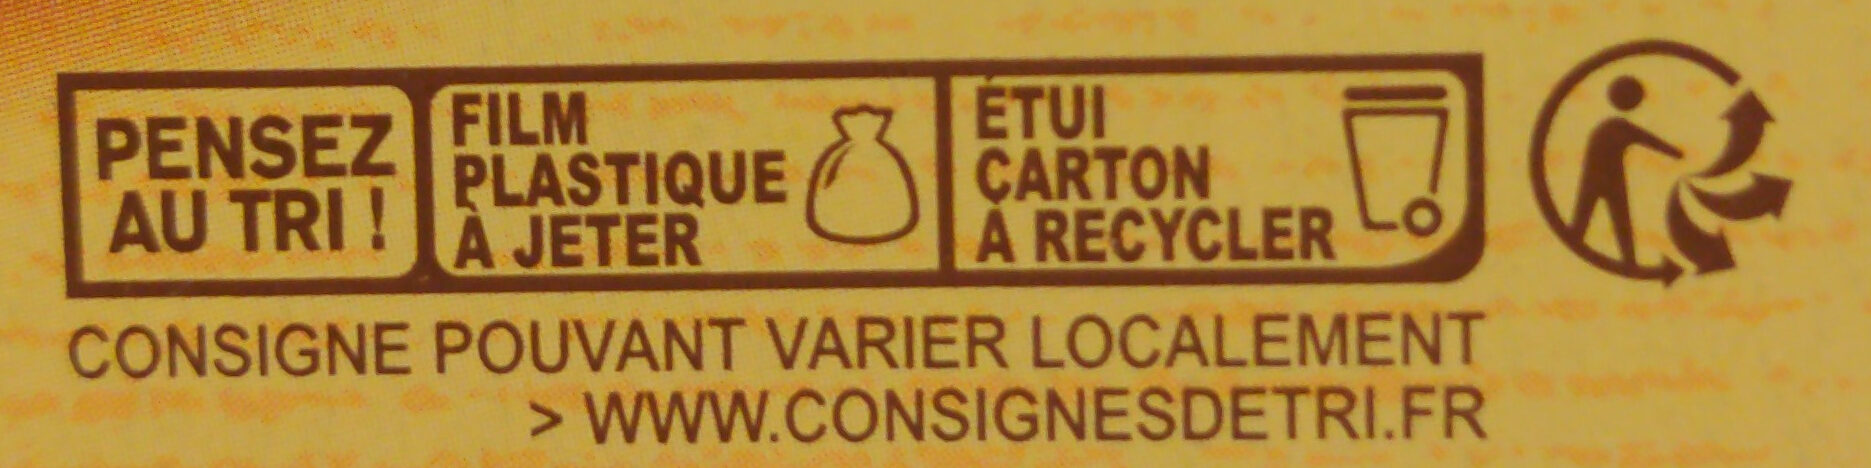 galette St Michel - Istruzioni per il riciclaggio e/o informazioni sull'imballaggio - fr